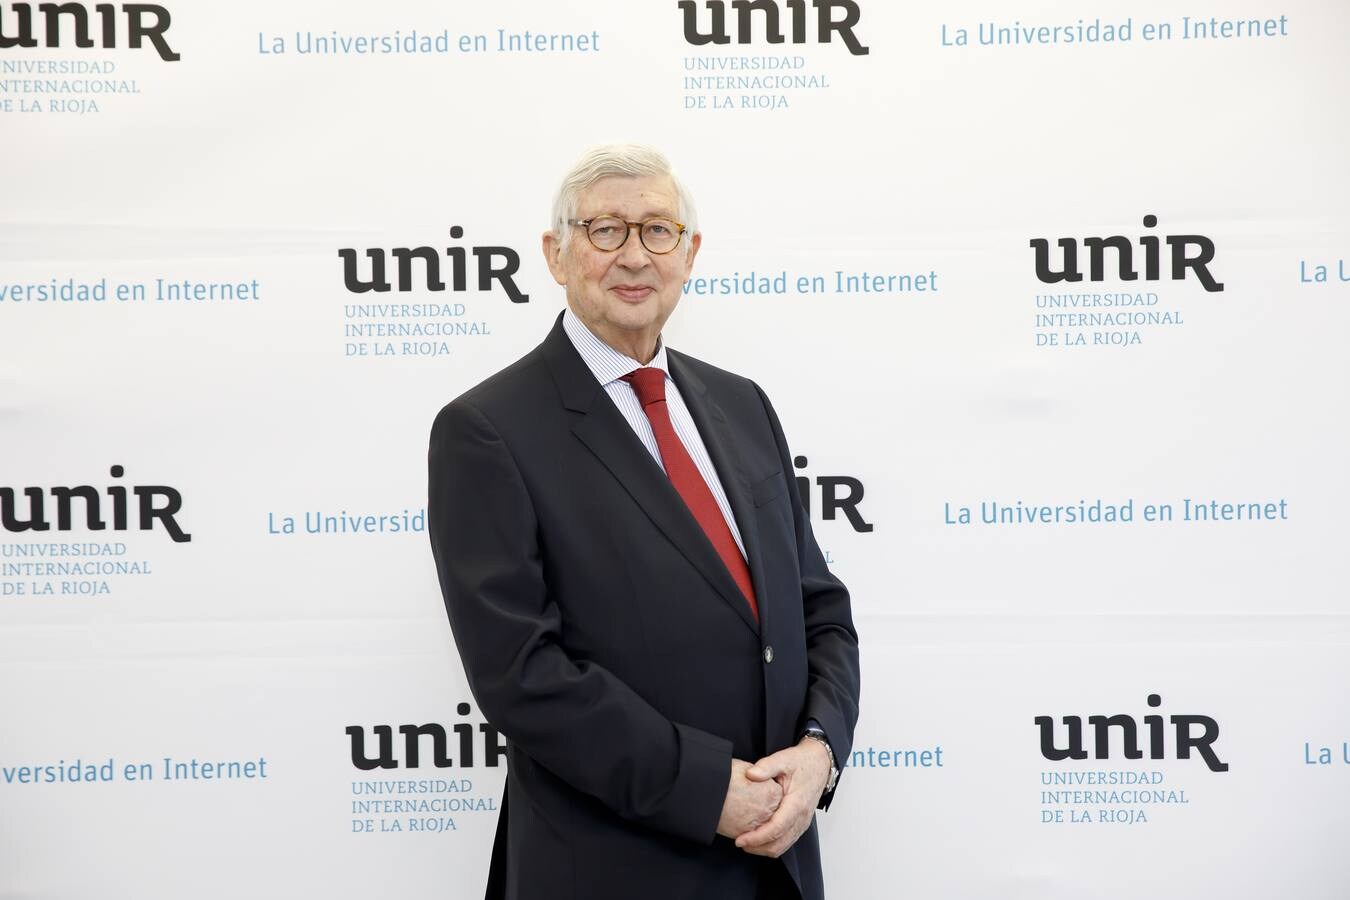 Coloquio sobre la situación actual de la universidad española y sus retos, organizado en Logroño por la Universidad Internacional de La Rioja (UNIR).